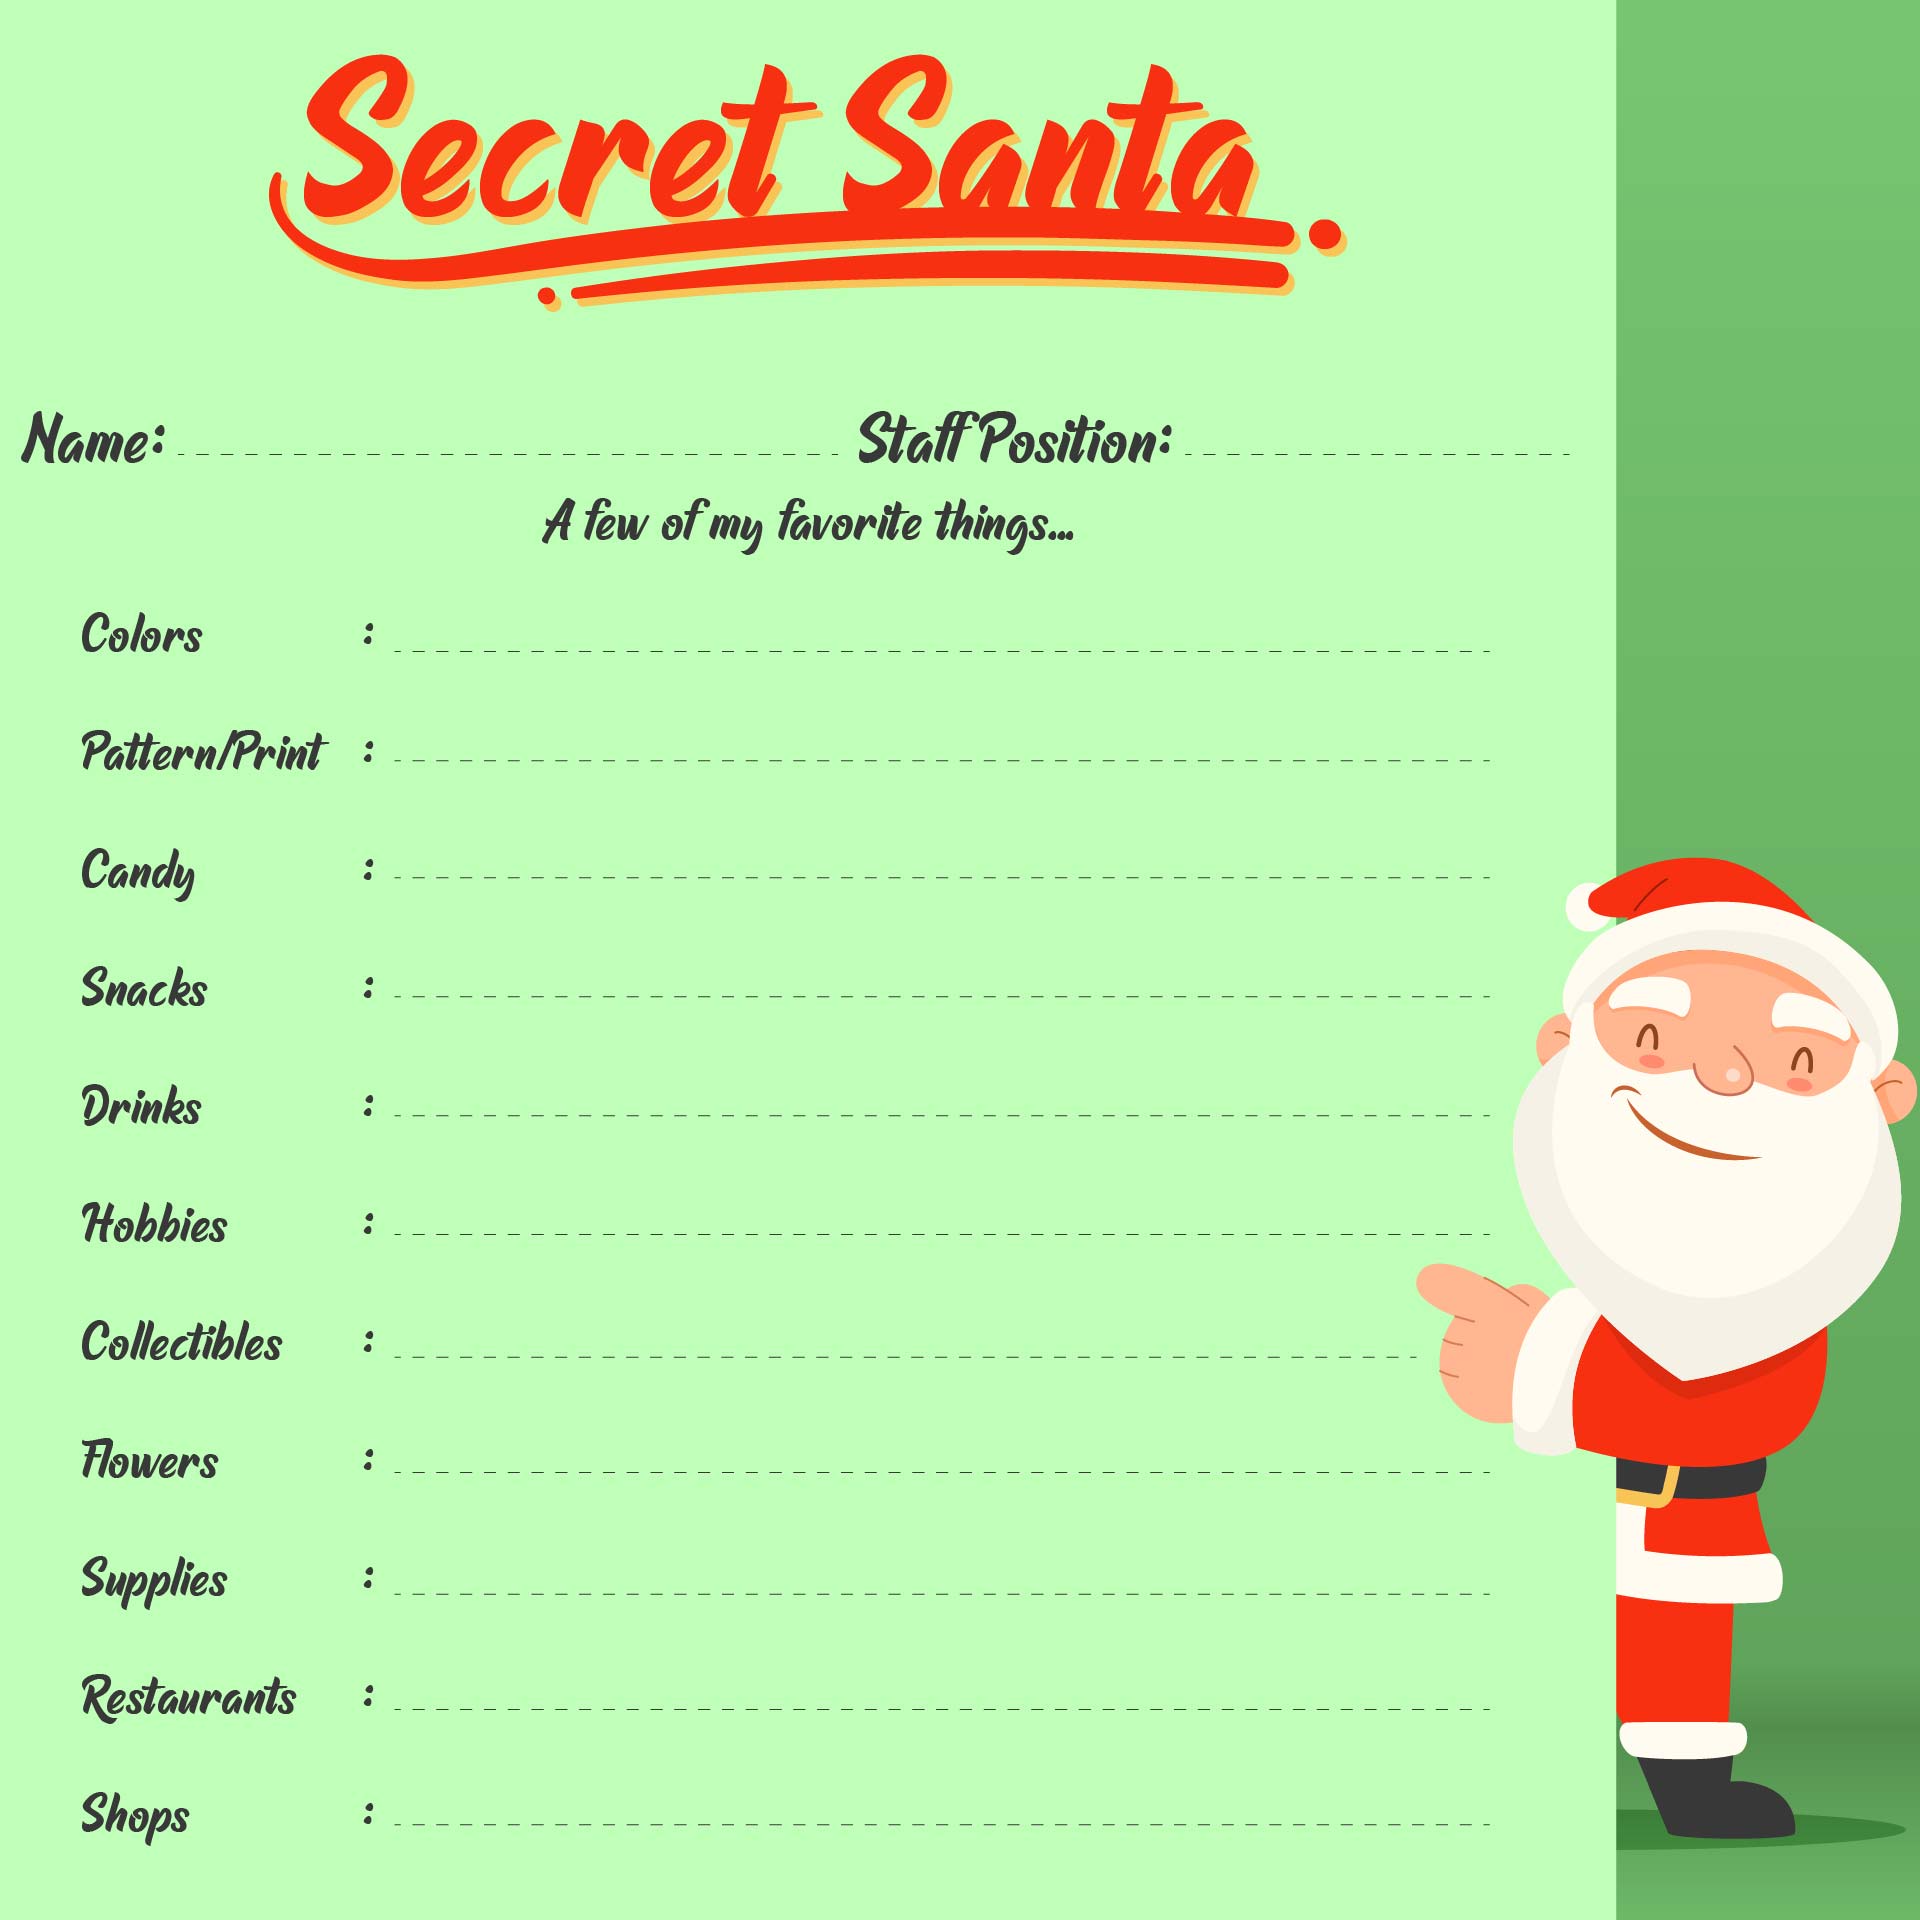 Secret Santa About Me Form